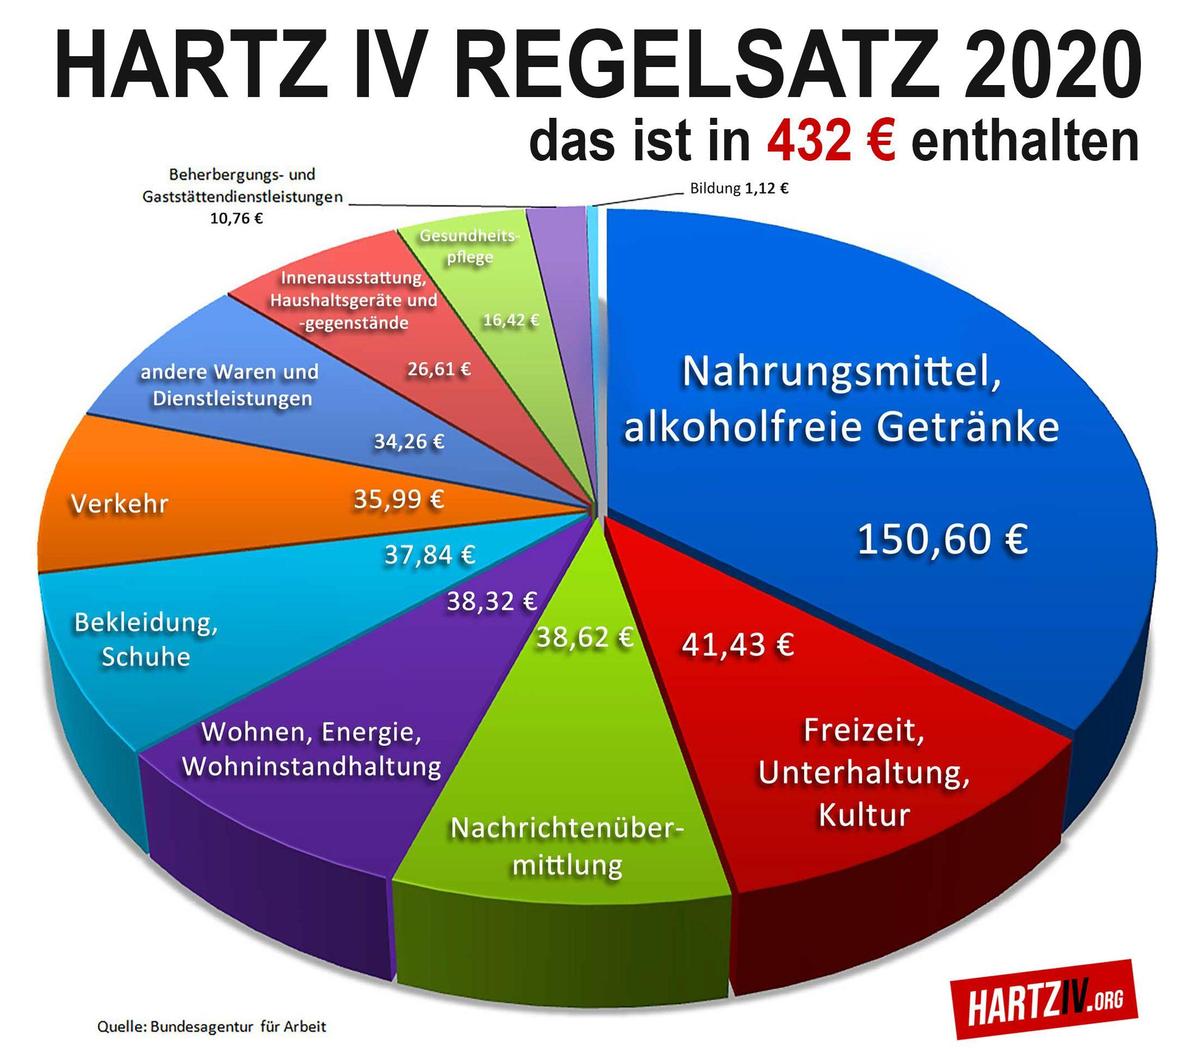 hartz4-regelsatztorte2020-1